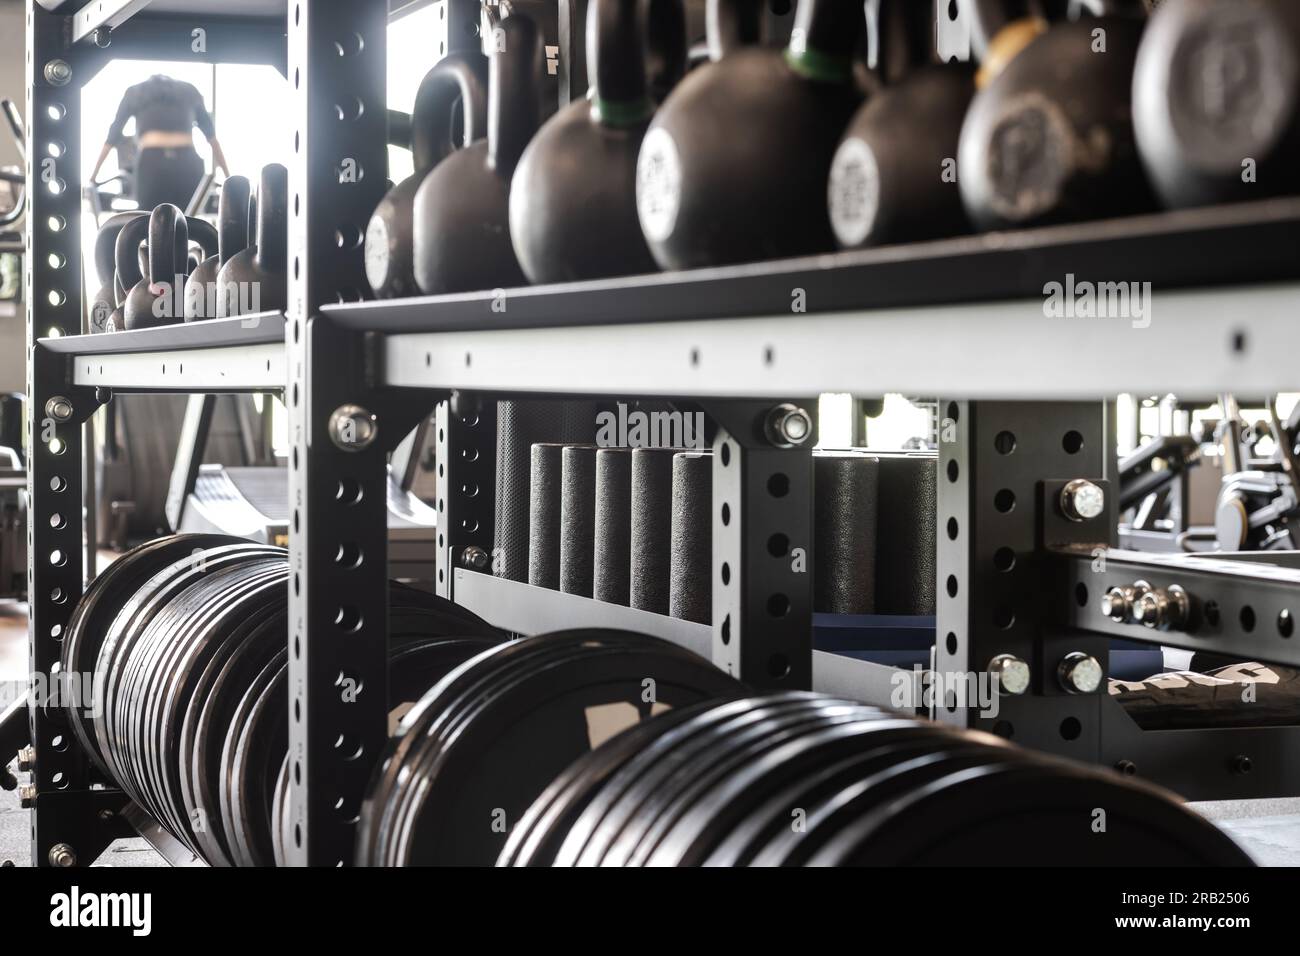 Gros plan de l'étagère d'équipement de gym avec kettlebells, plaque de poids et rouleaux de massage pour l'entraînement de force. Style de vie sain et thème de remise en forme. Banque D'Images